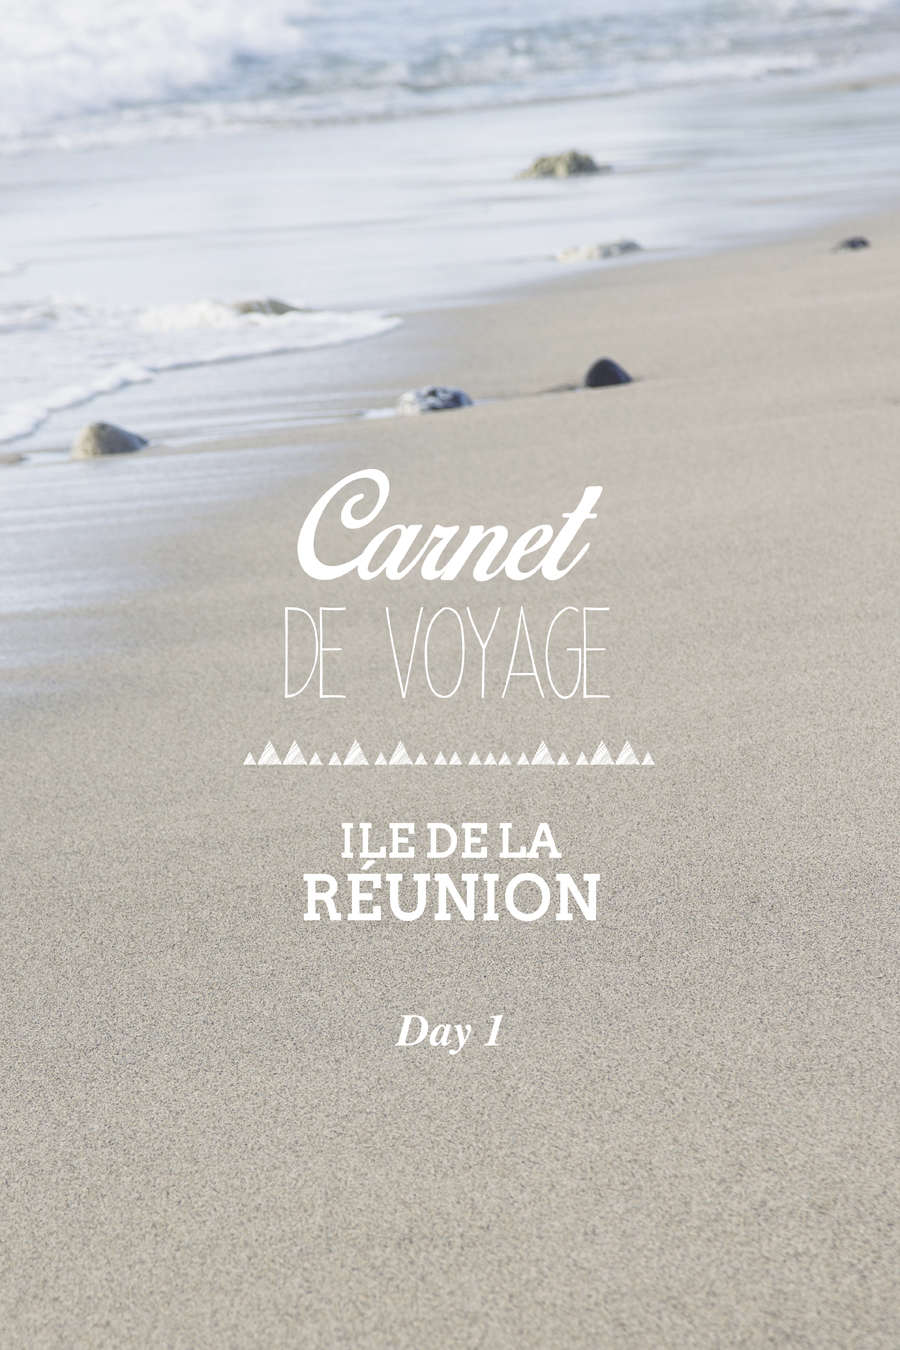 carnet_de_voyage_ile_de_la_reunion_day1